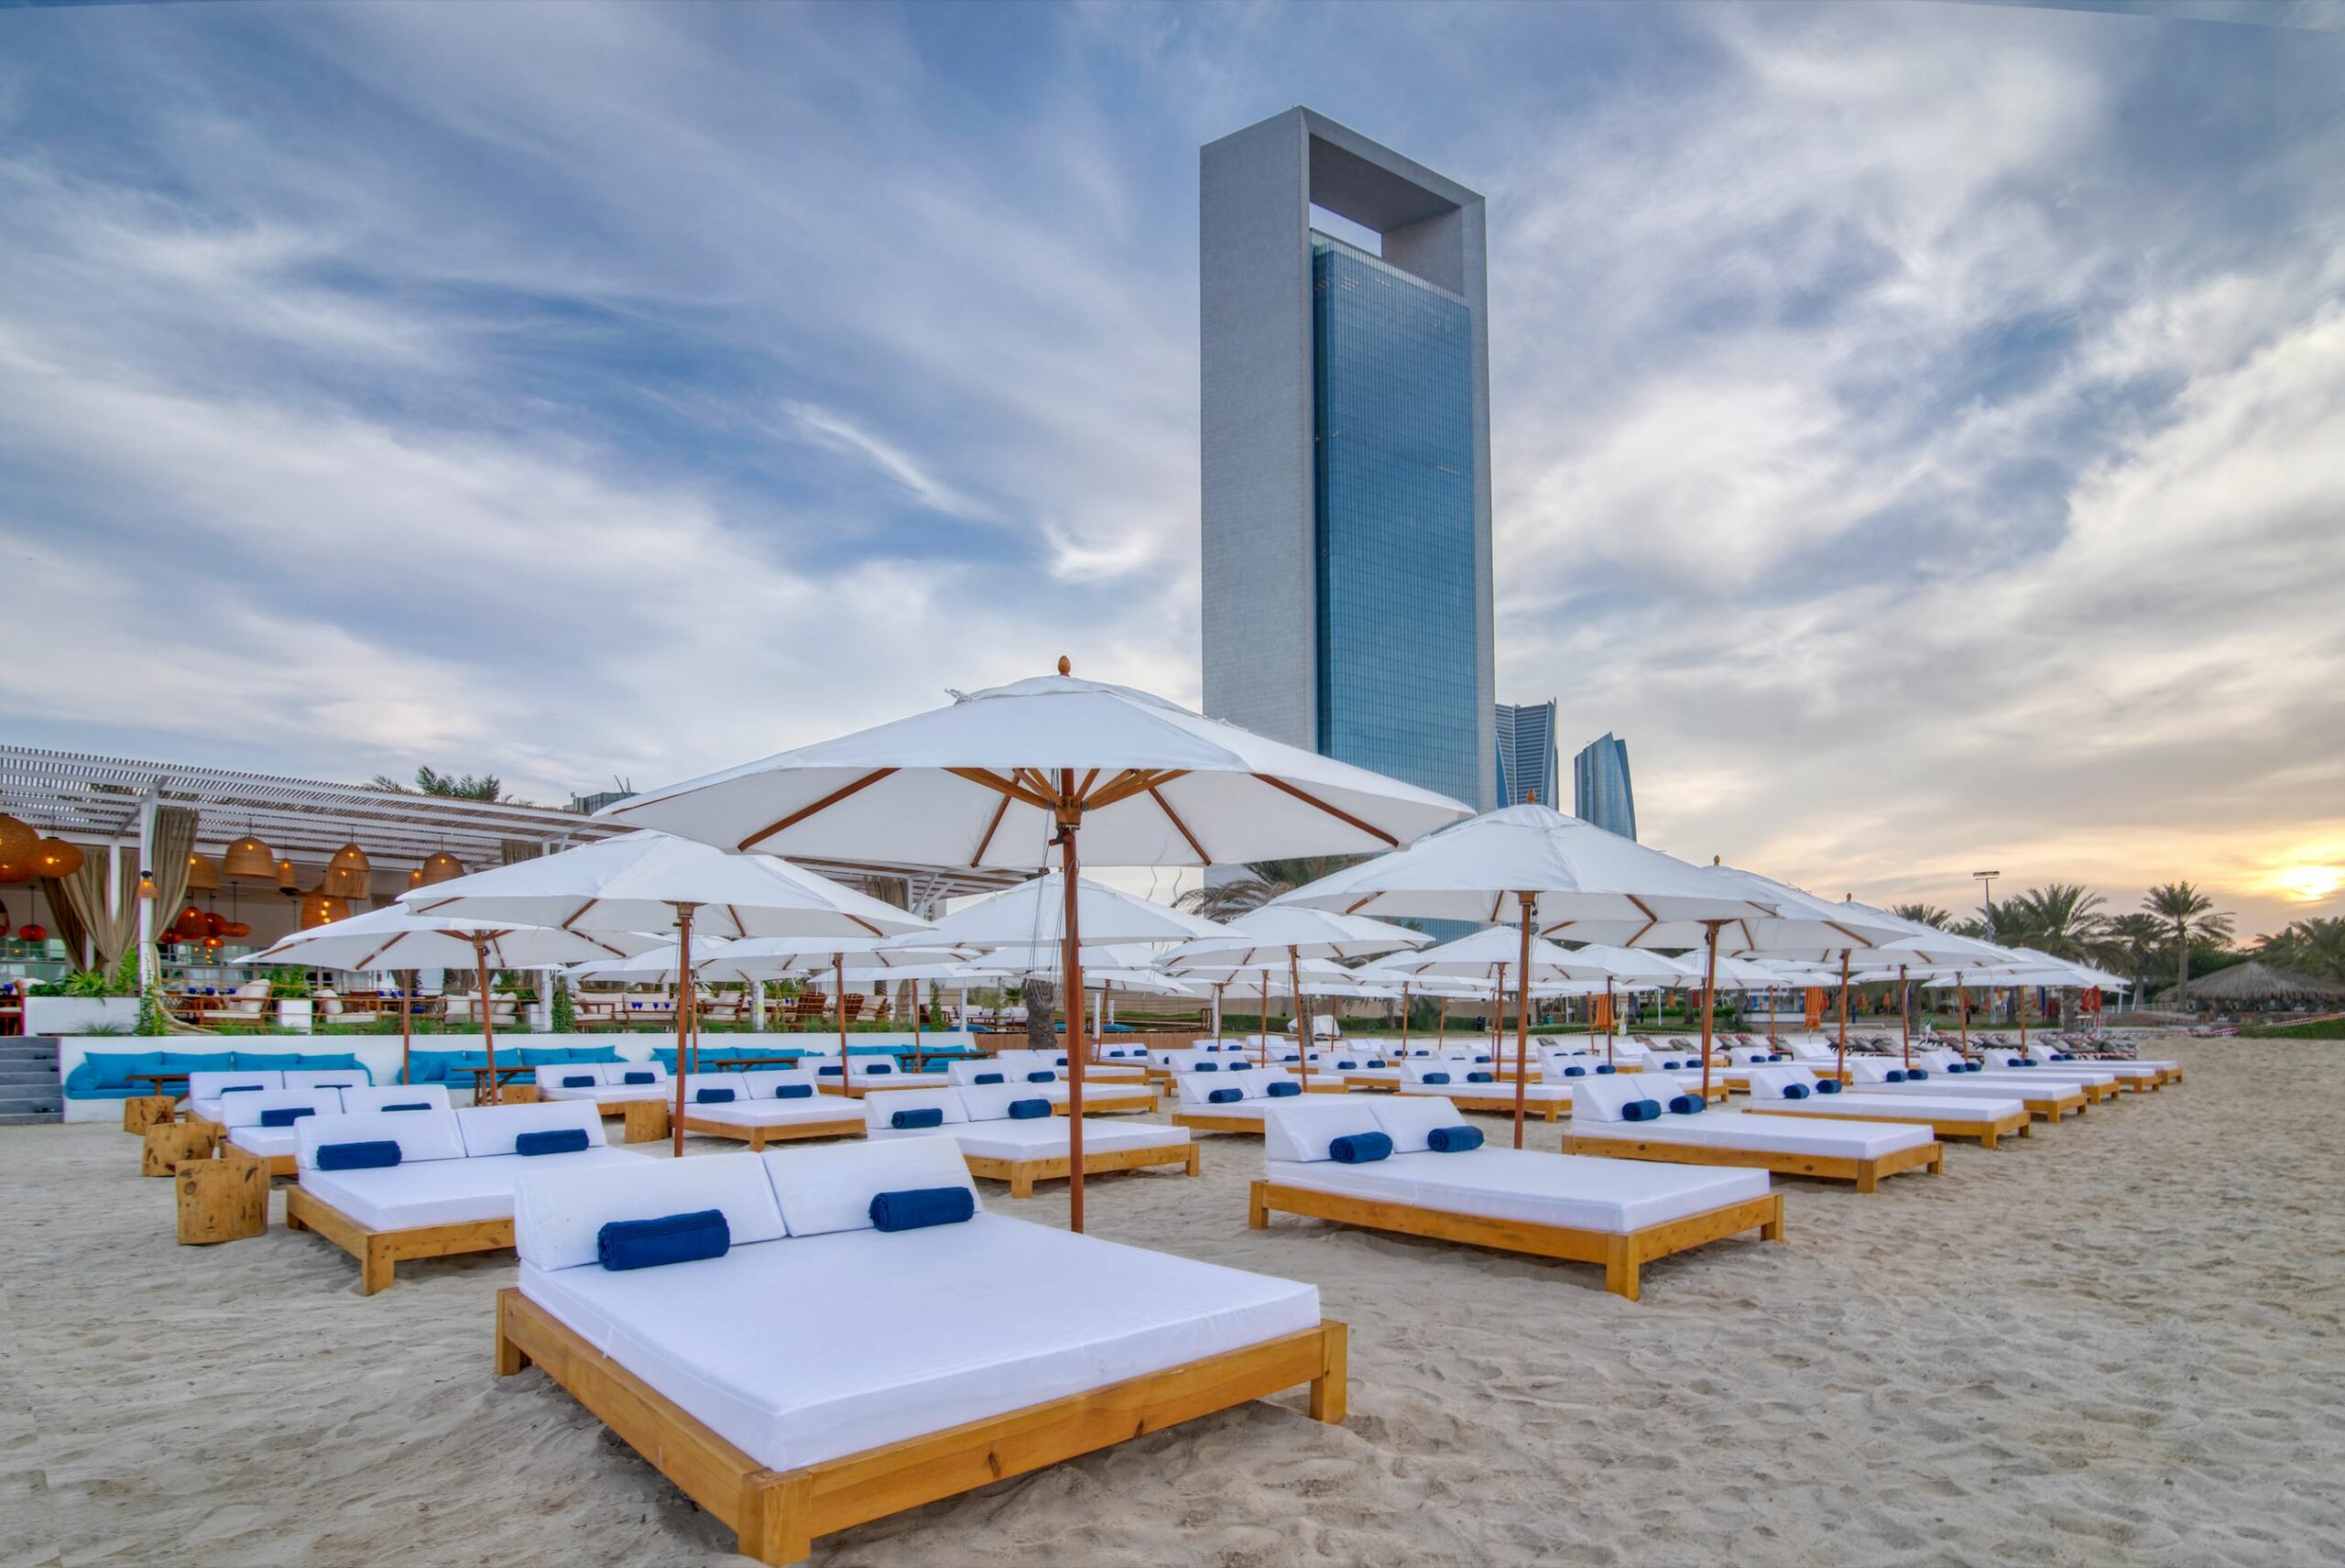 Abu Dhabi staycation